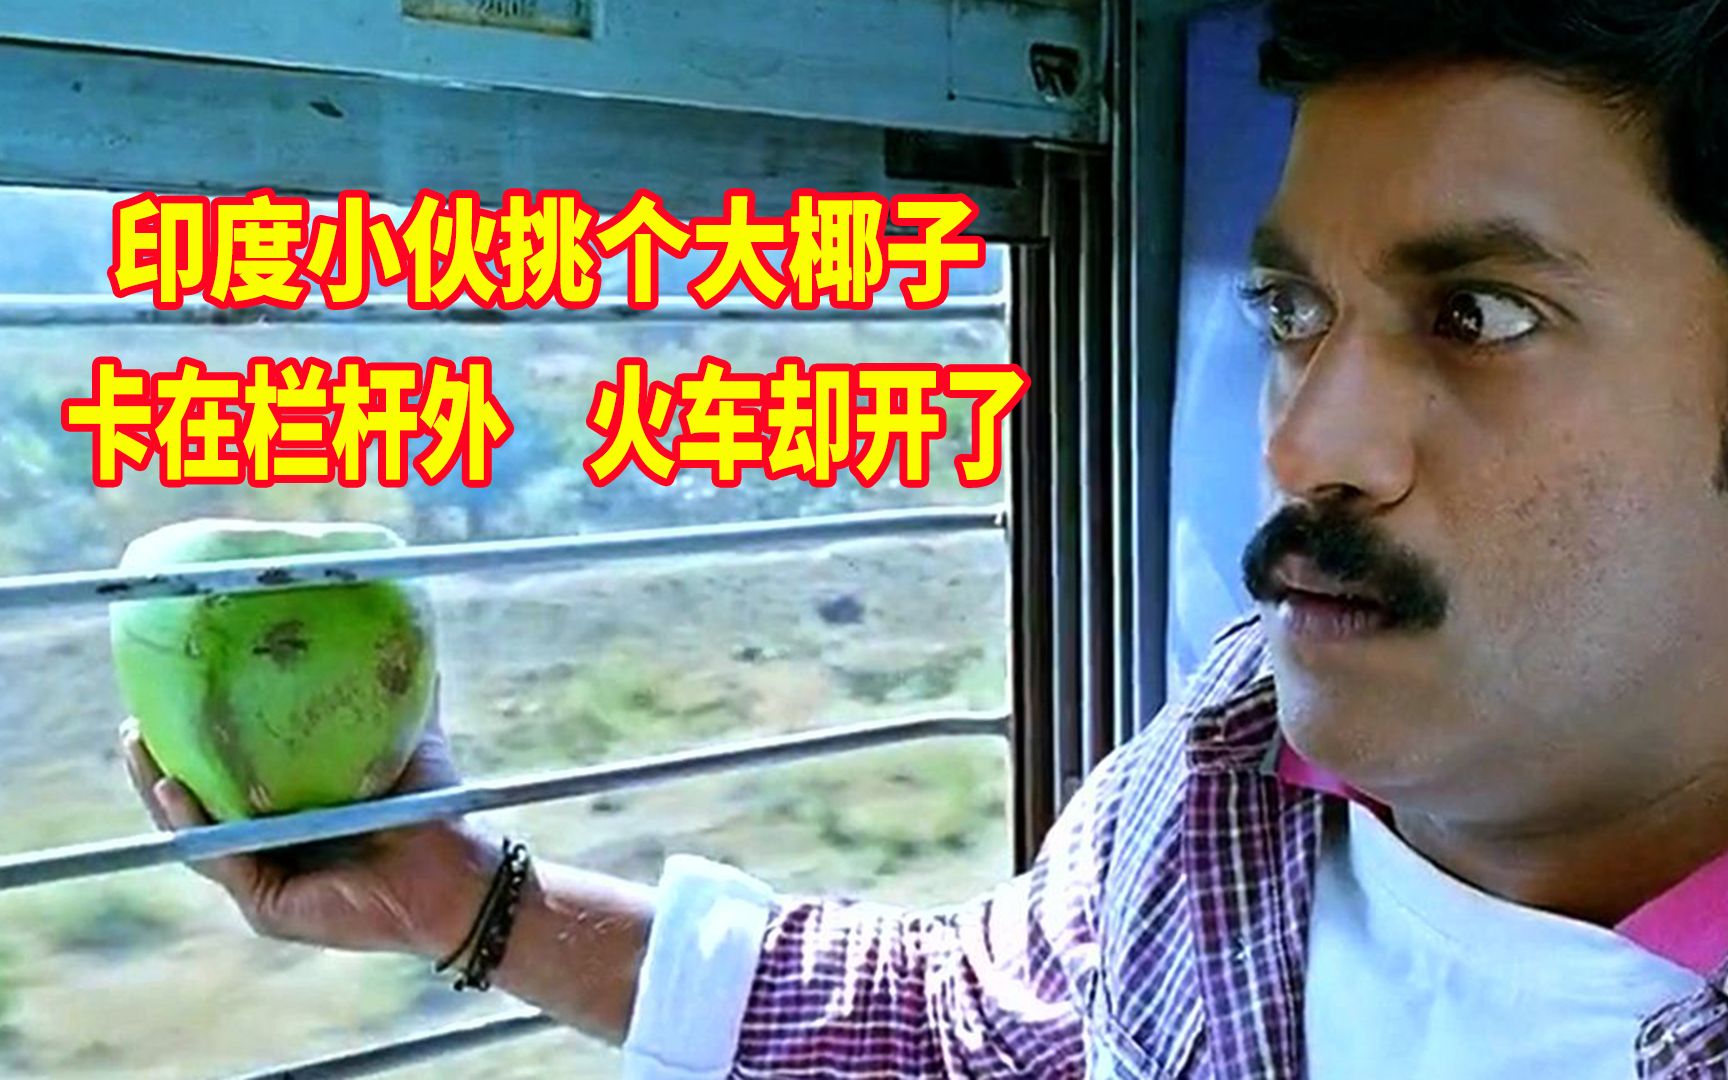 印度小伙火车上买个椰子喝，却卡在窗外拿不进来，这下尴尬了